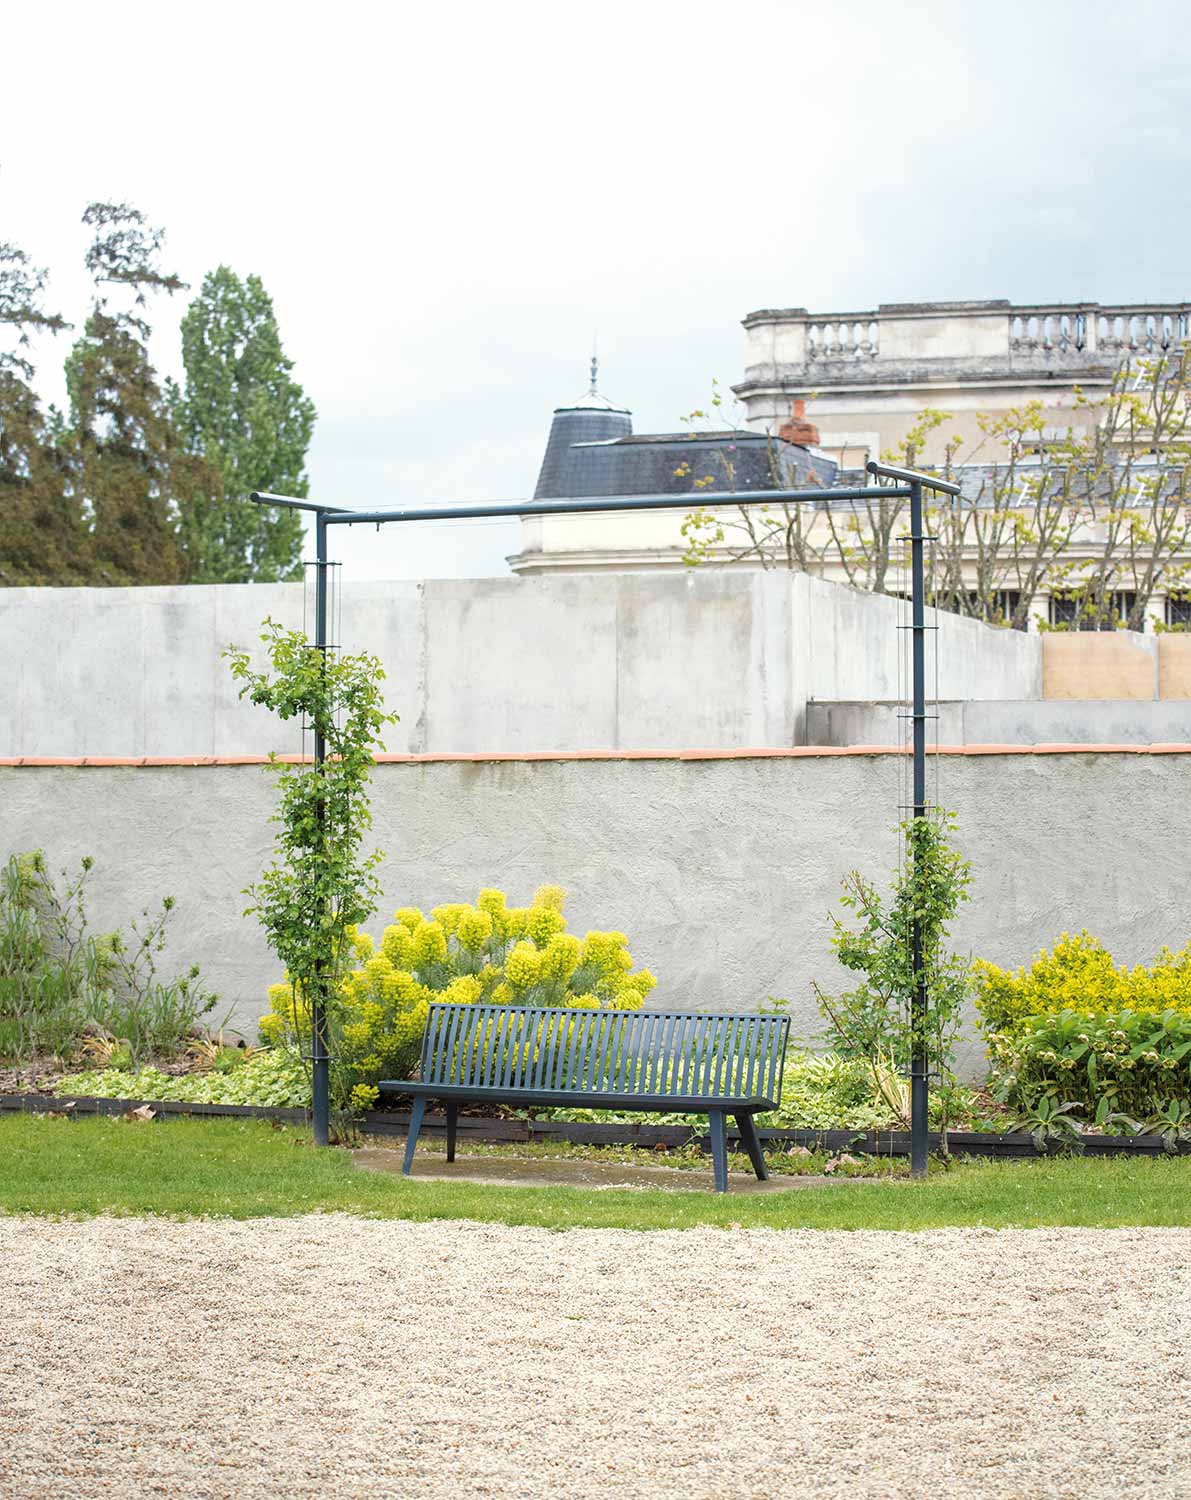 Portique pour plantes grimpantes BABYLONE conçu et fabriqué par Aréa mobilier urbain